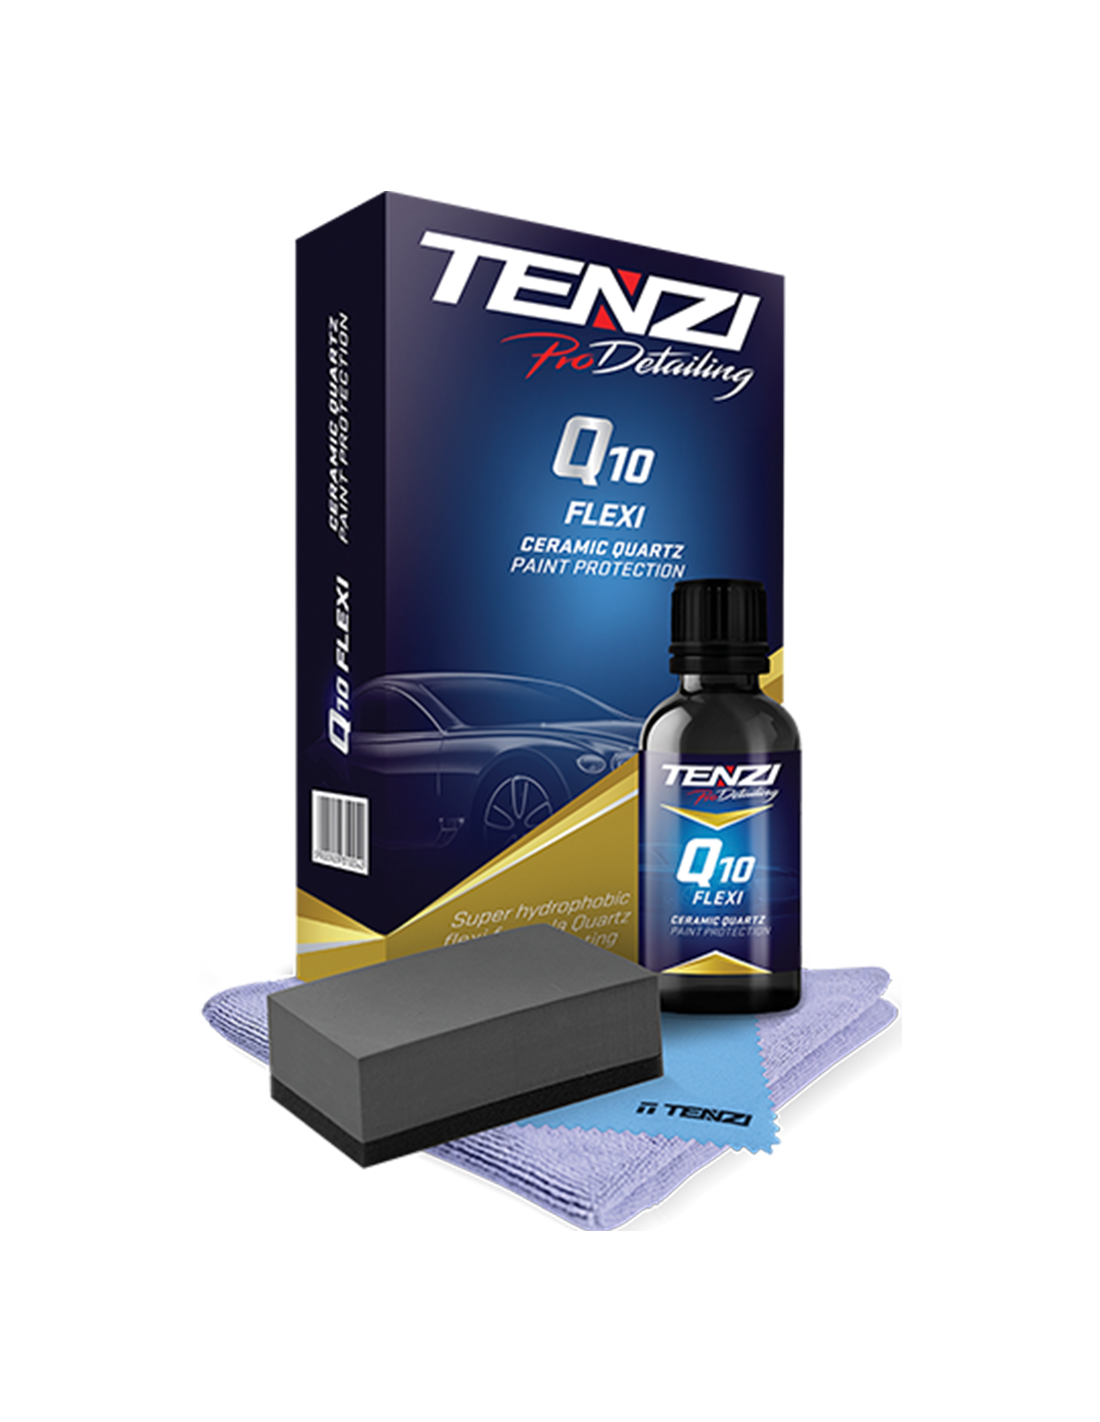 TENZI ProDetailing Set: Q10 FLEXI, Ceramic Quartz, Lack Versiegelung.